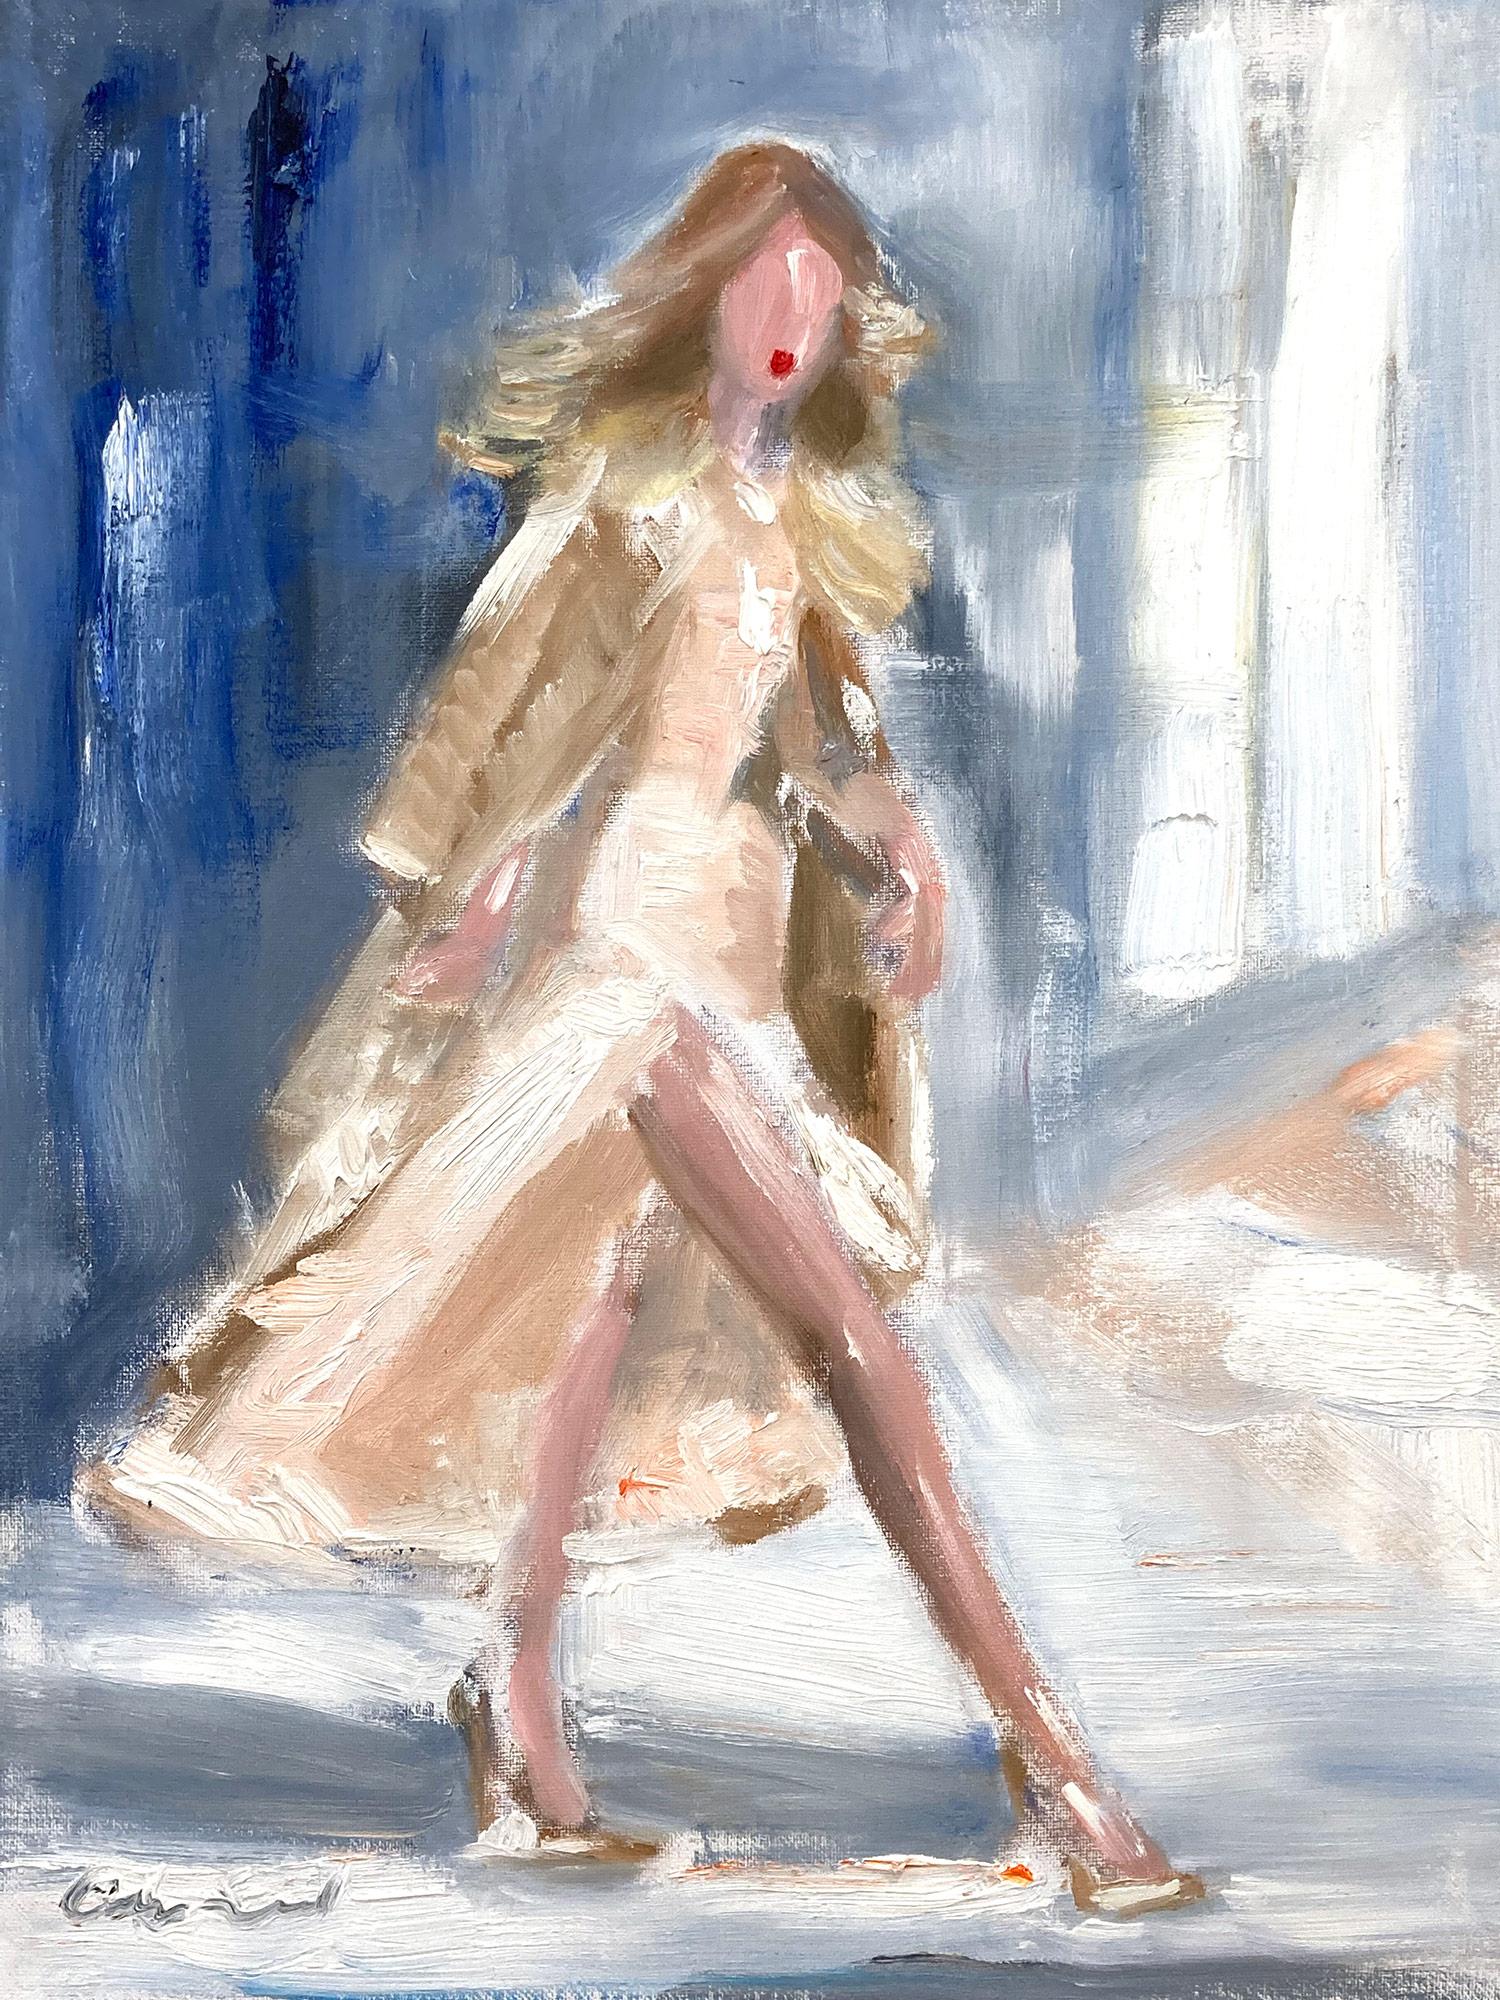 Figurative Painting Cindy Shaoul - "Stepping Out NYC" Peinture à l'huile impressionniste sur toile - Super Modèle Gigi Hadid